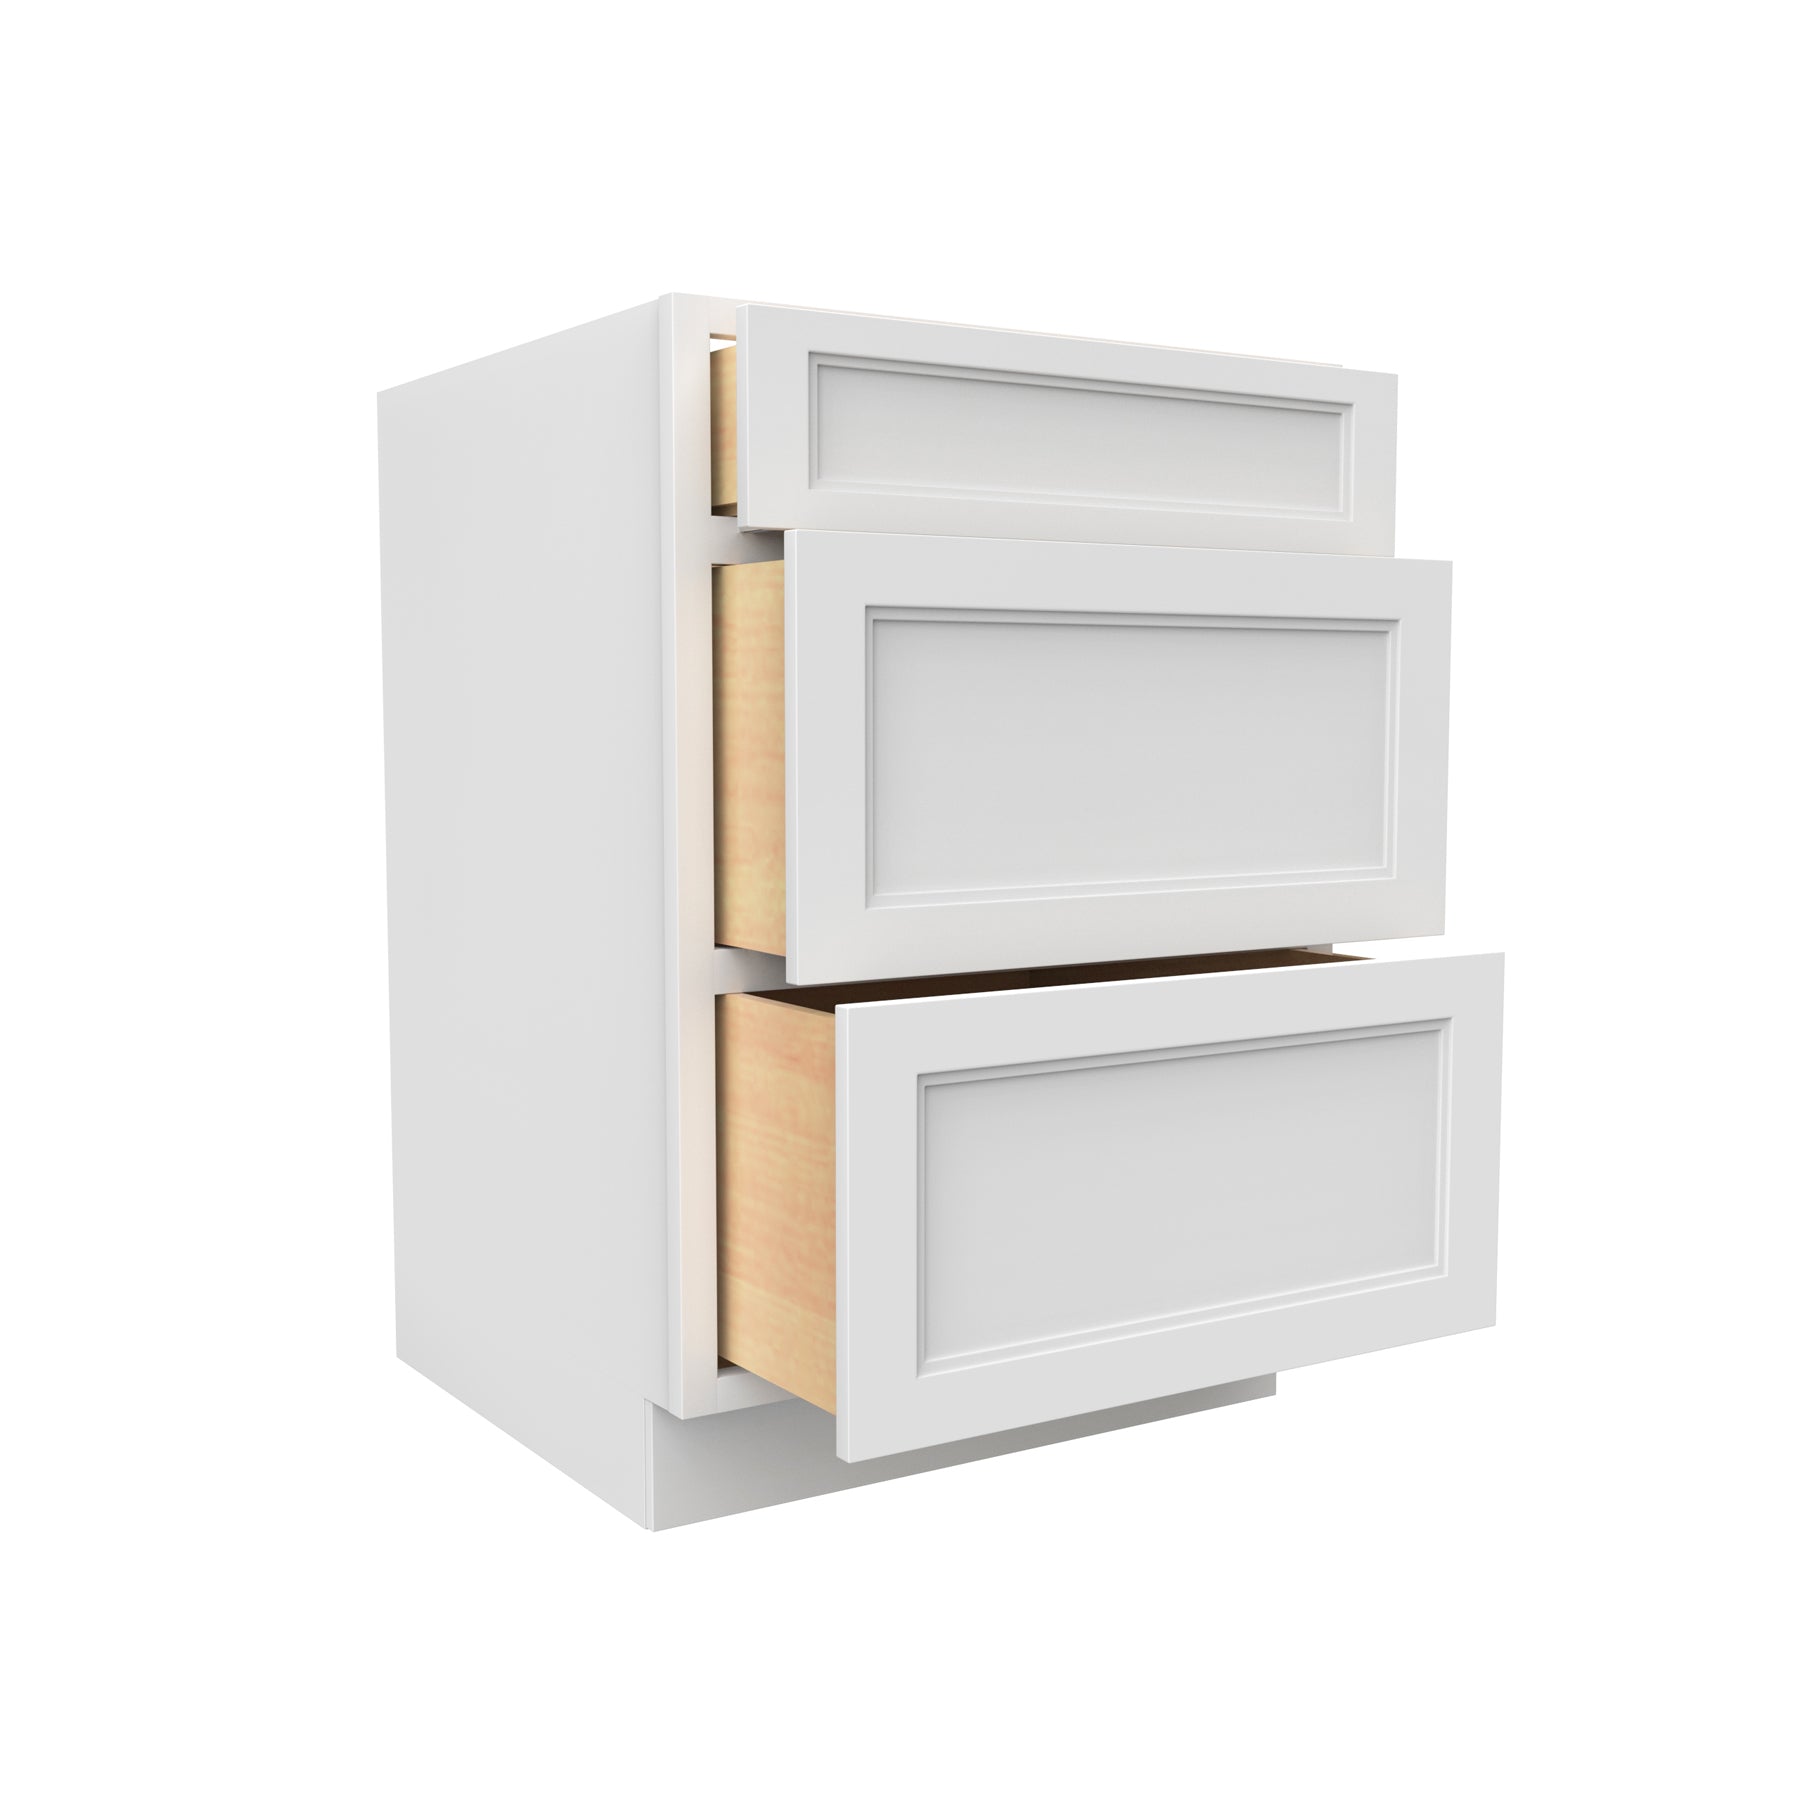 Fashion White - 3 Drawer Base Cabinet | 24"W x 34.5"H x 24"D